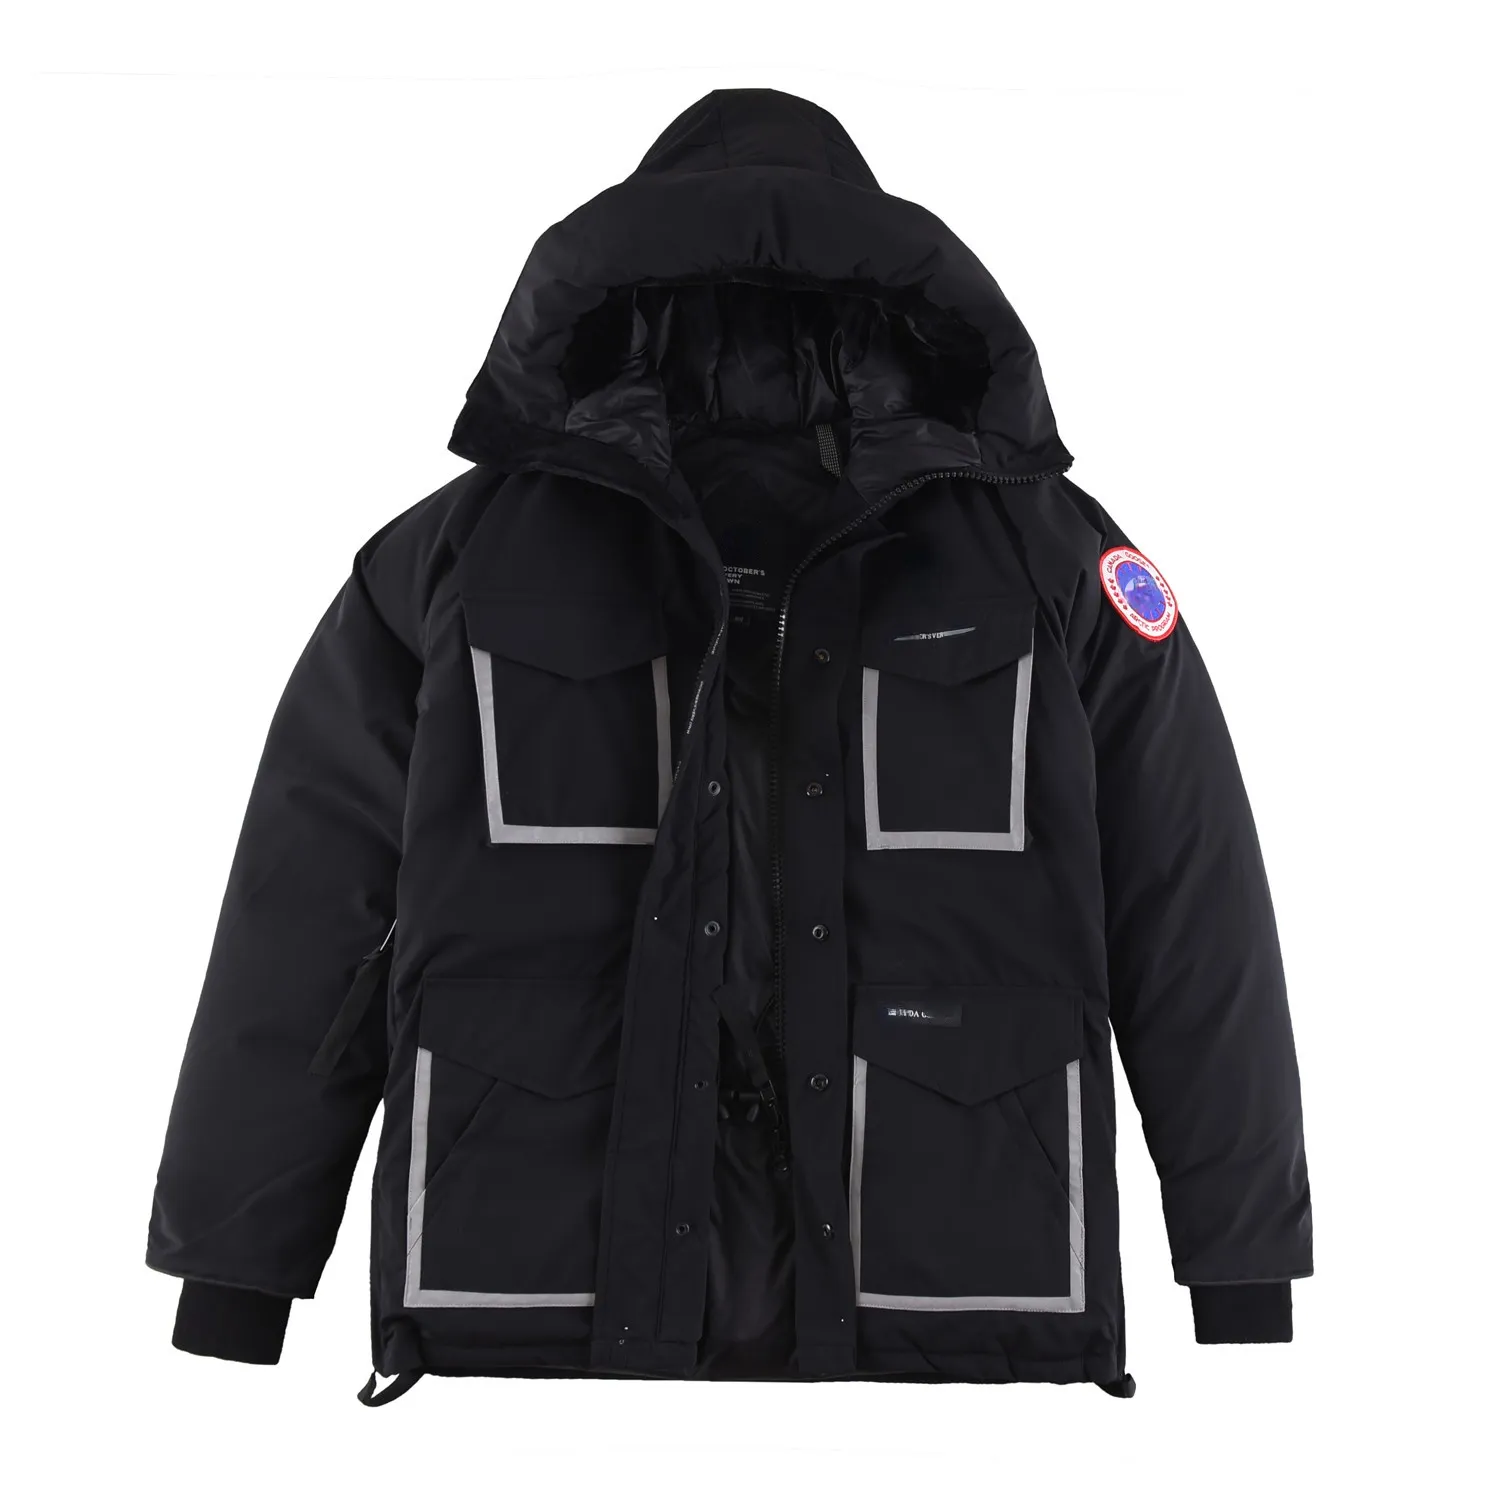 남성 겨울 럭셔리 자켓 패션 프린트 디자인 까마귀 코트 따뜻한 Parkas windproof 자켓 Y600A4630